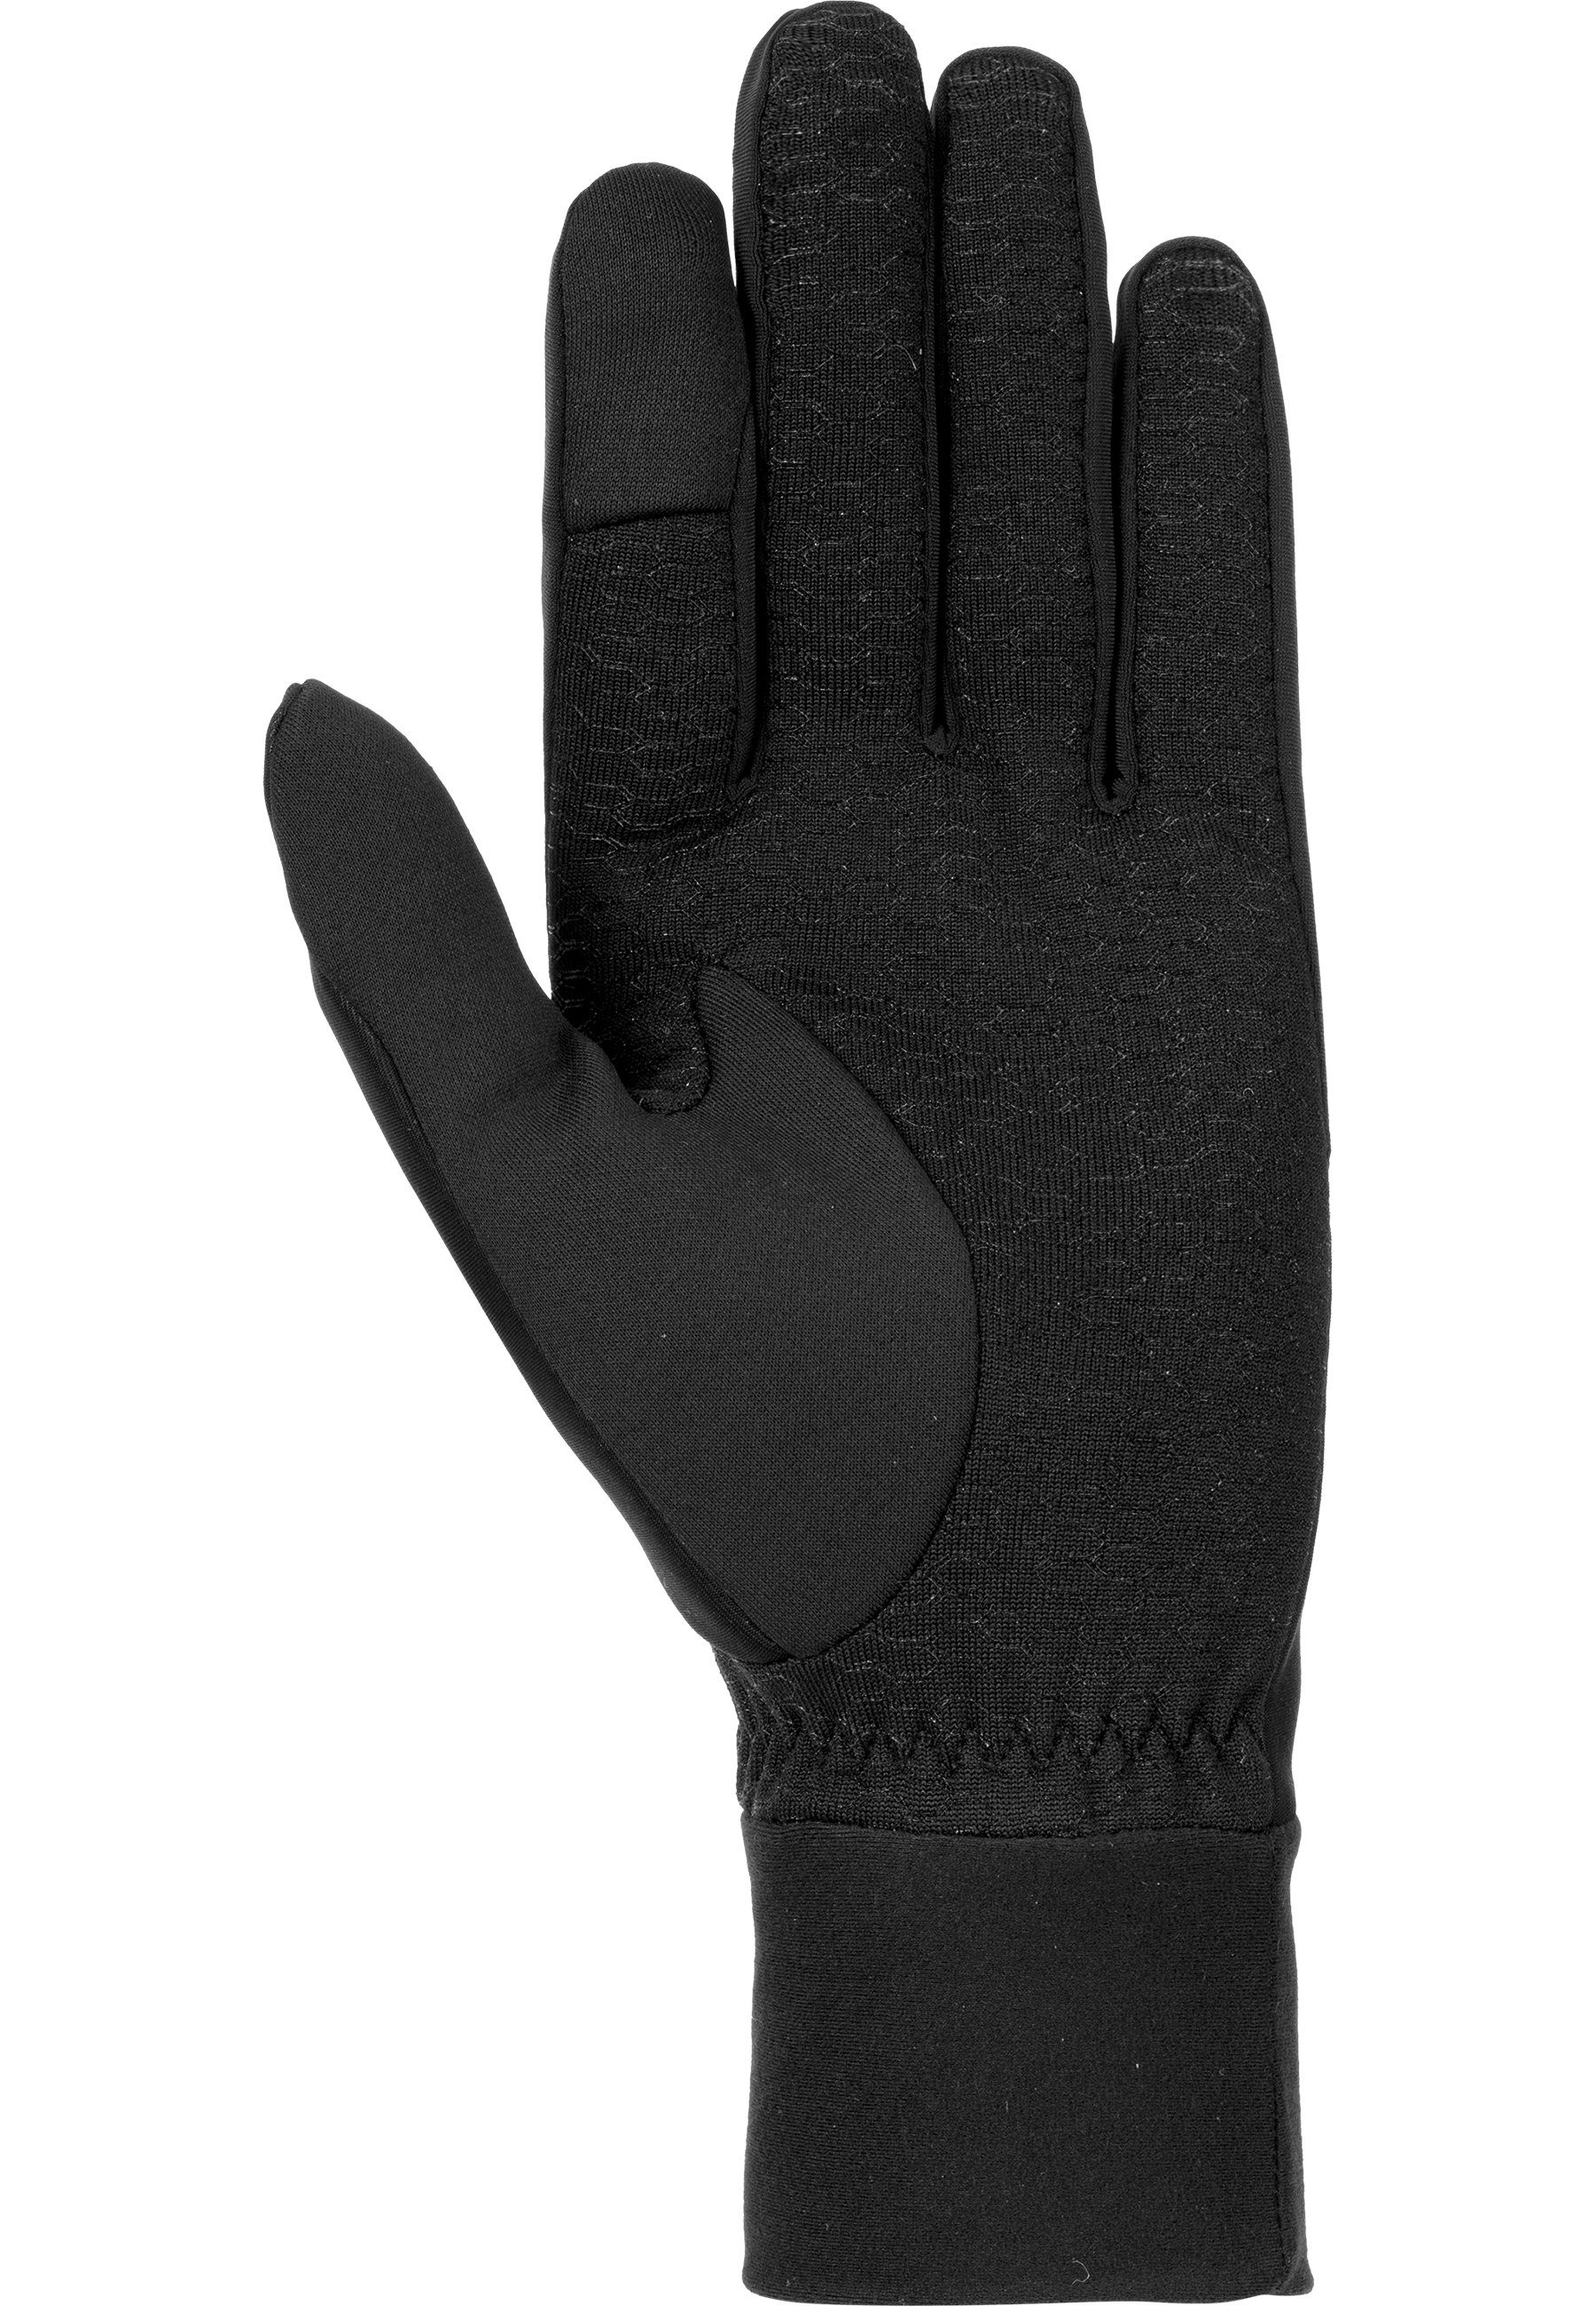 Reusch Skihandschuhe schwarz-silberfarben GORE-TEX® Karayel Touch-Tec praktischer mit Technologie INFINIUM™